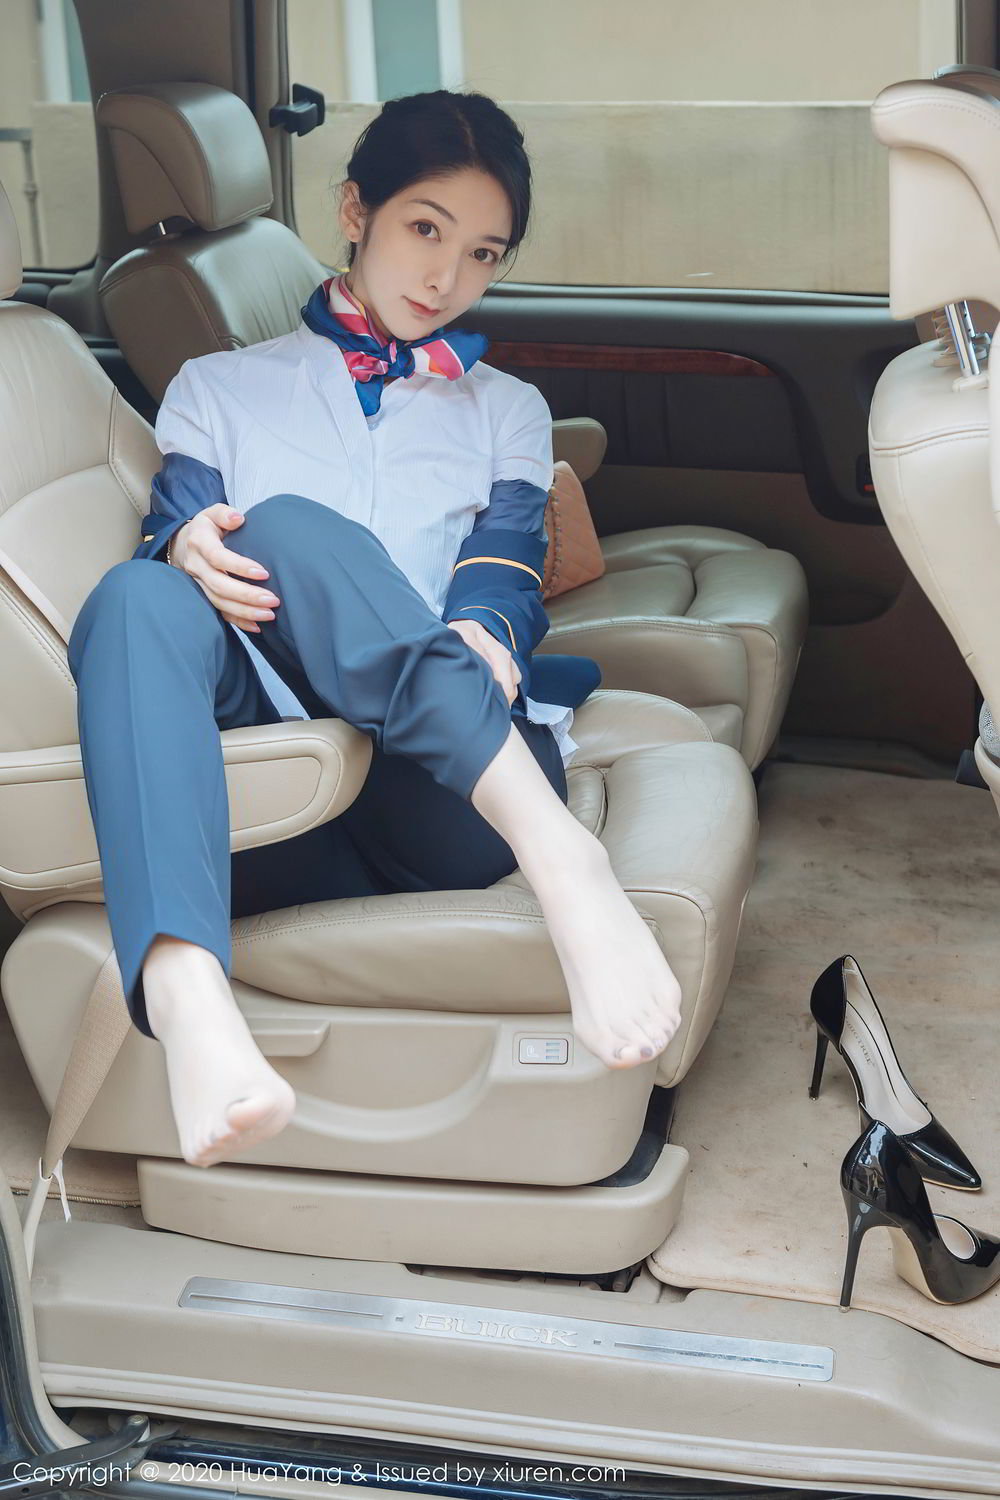 新疆美女Angela小热巴职业装高跟穿着车内性感妖娆夸张姿势写真图片